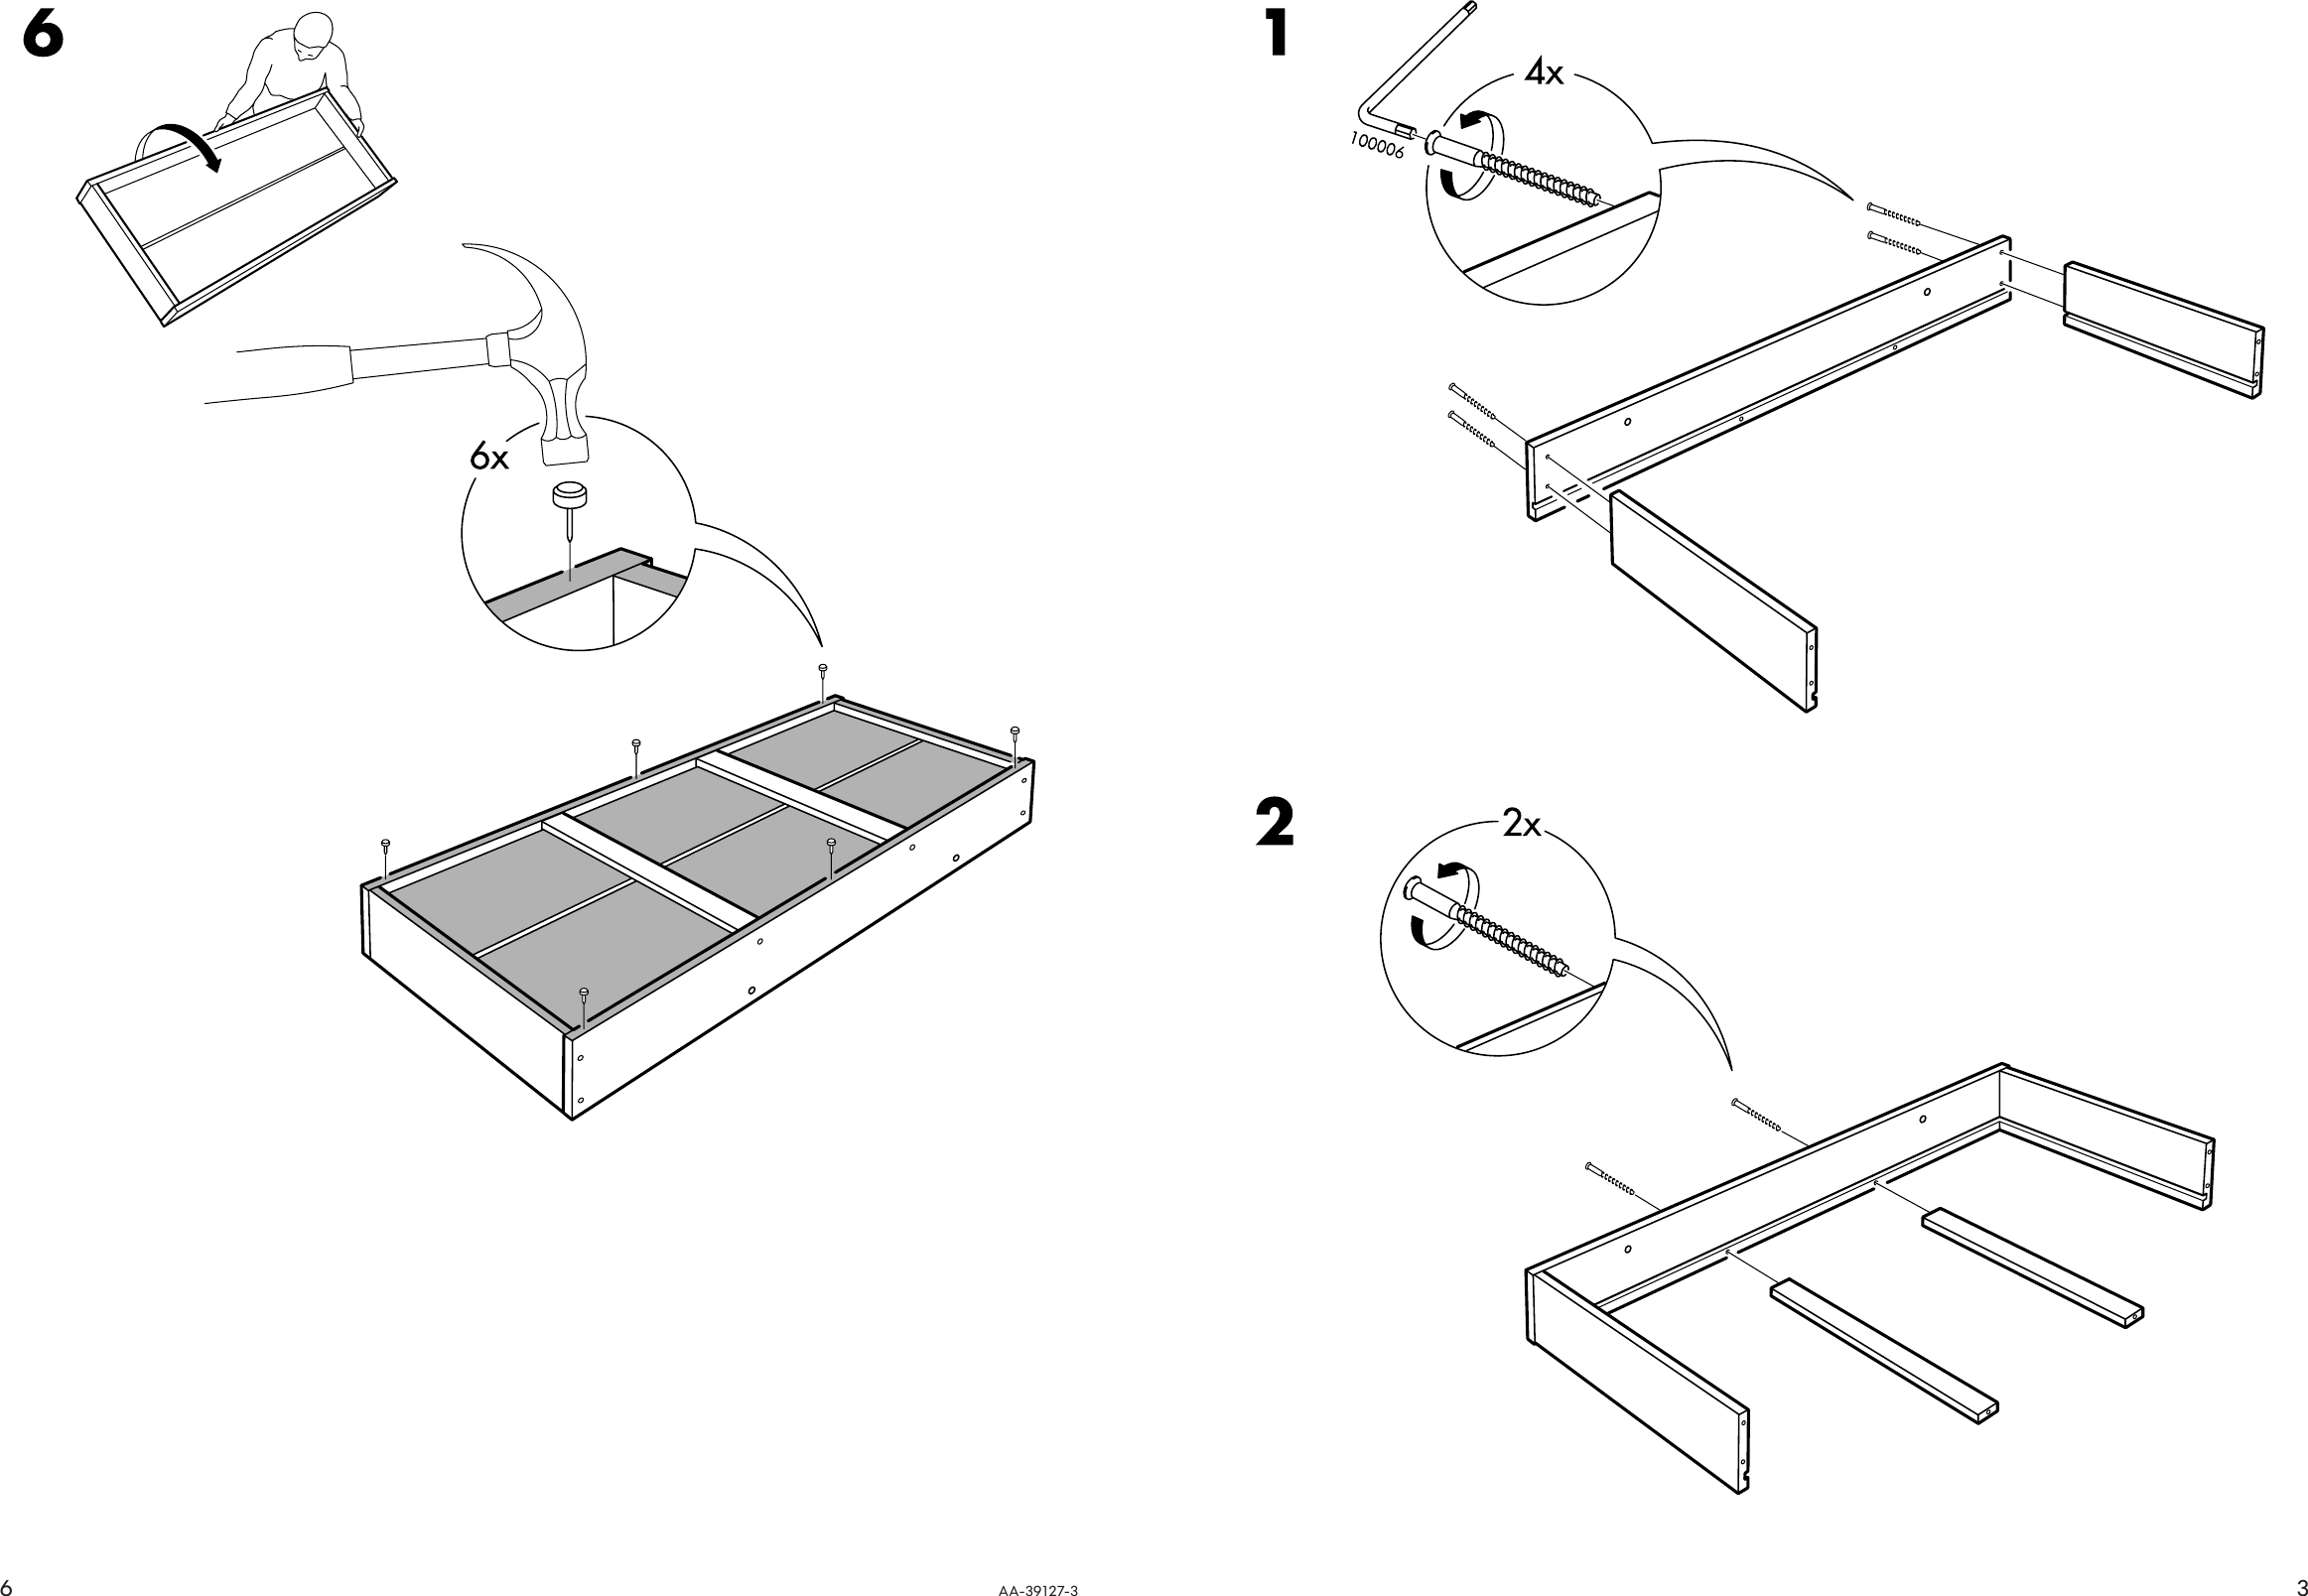 Page 3 of 4 - Ikea Ikea-Beddinge-Bed-Storage-Box-Assembly-Instruction-9  Ikea-beddinge-bed-storage-box-assembly-instruction